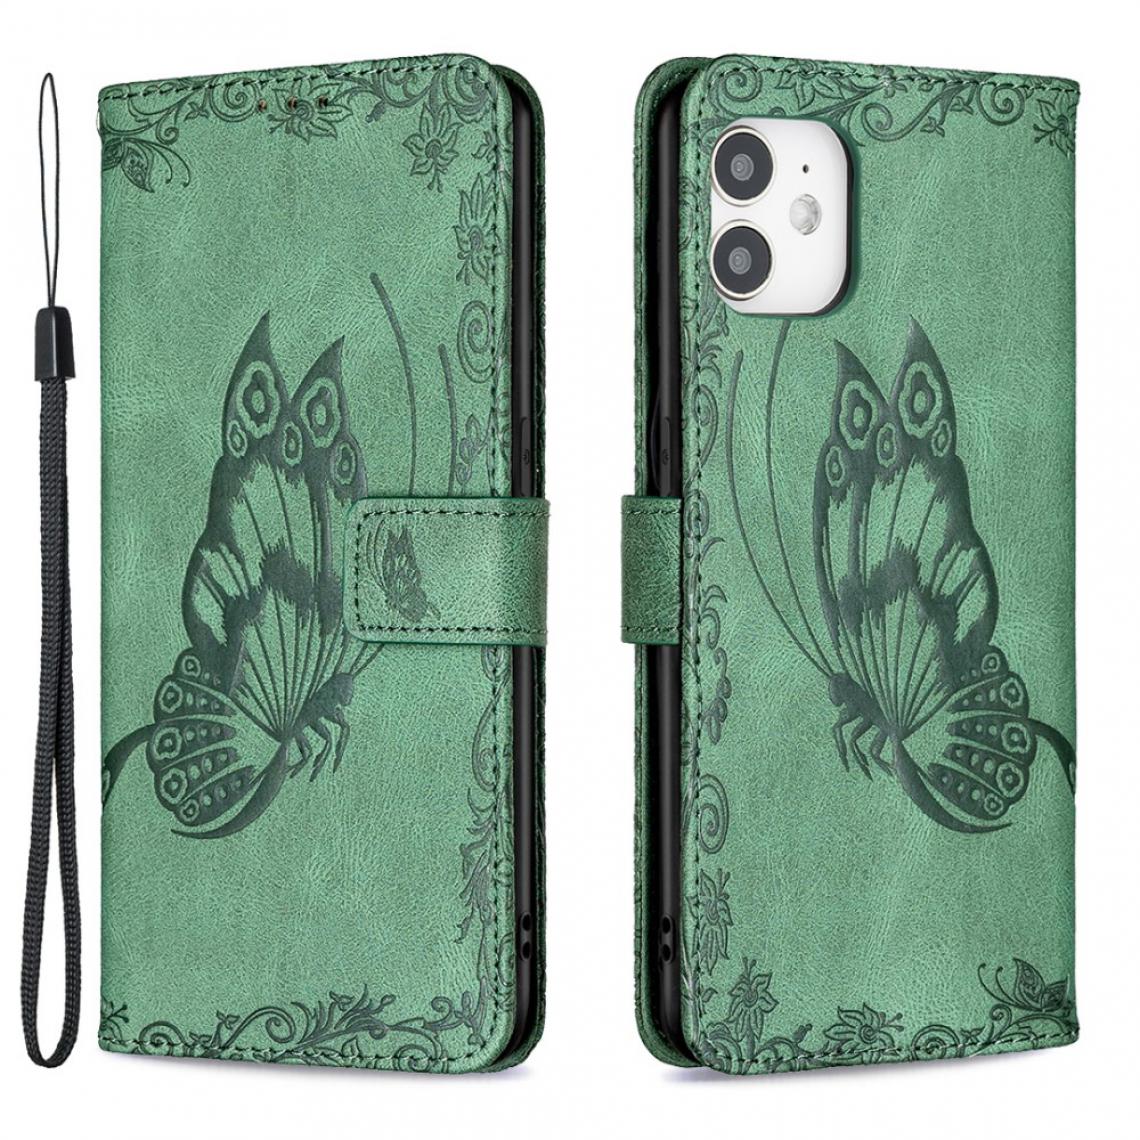 Other - Etui en PU Empreinte Papillon Fleur vert pour votre Apple iPhone 12 Mini - Coque, étui smartphone